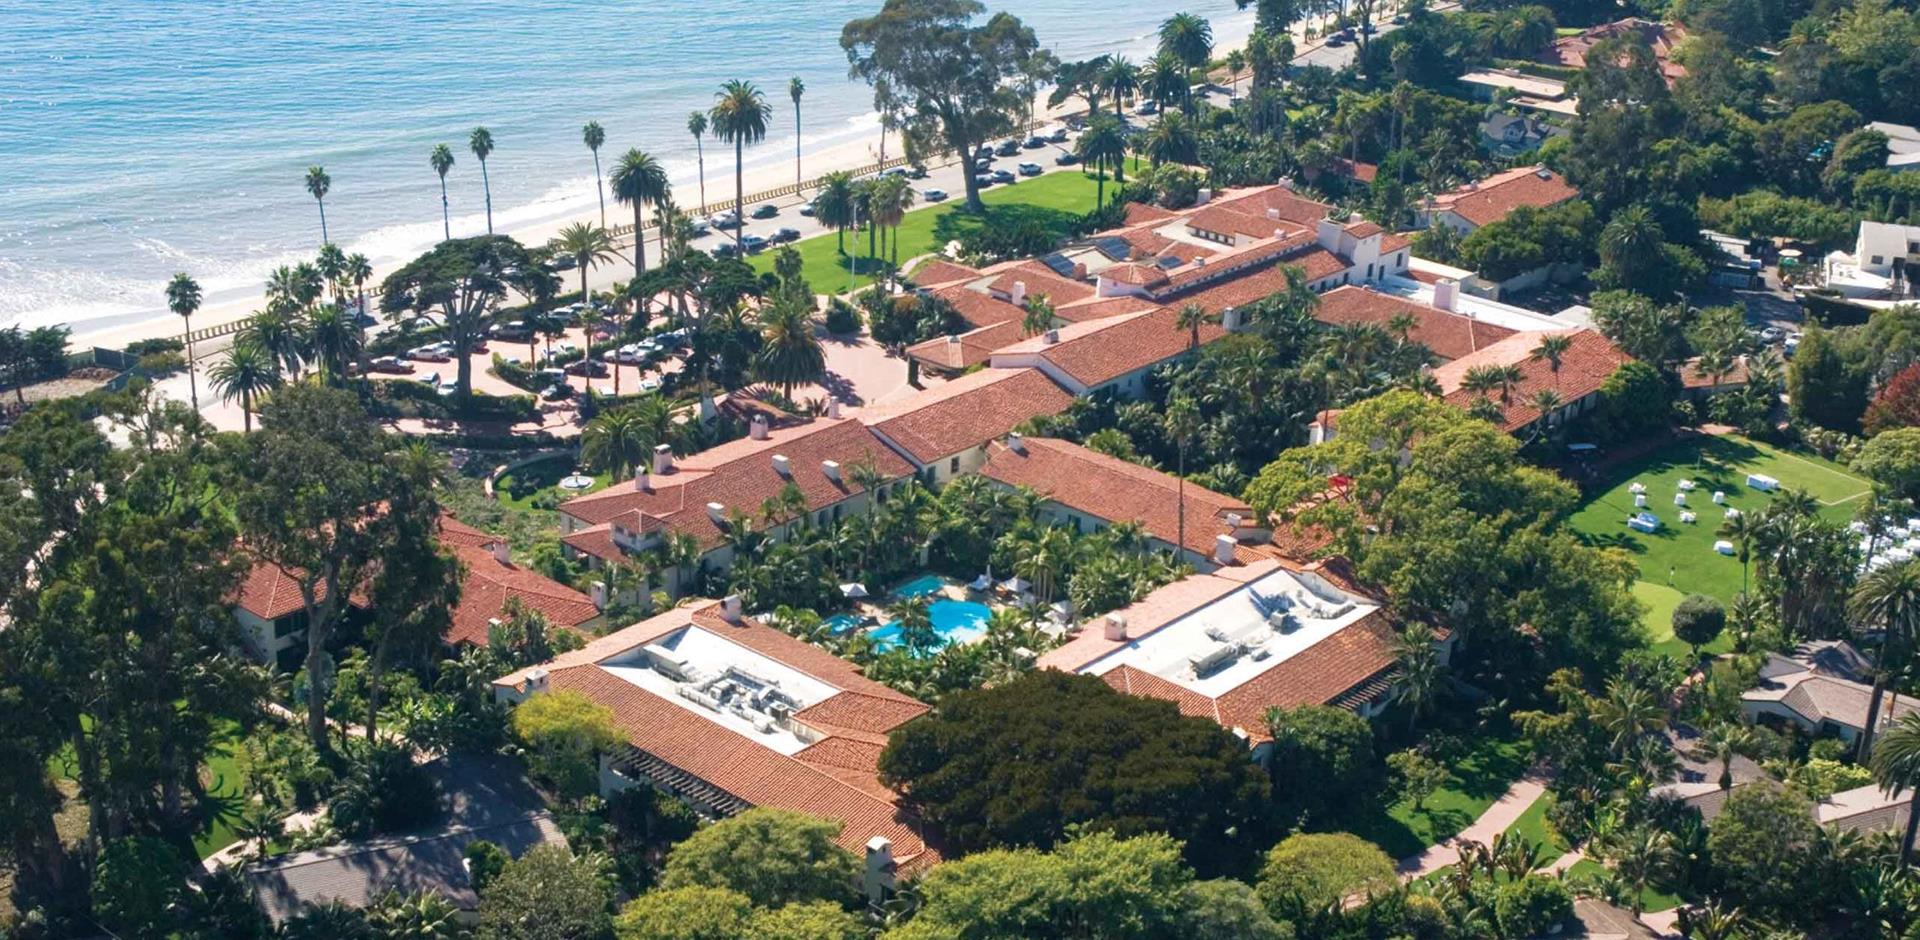 Aerial view of Four Seasons Resort The Biltmore, Santa Barbara, California, USA